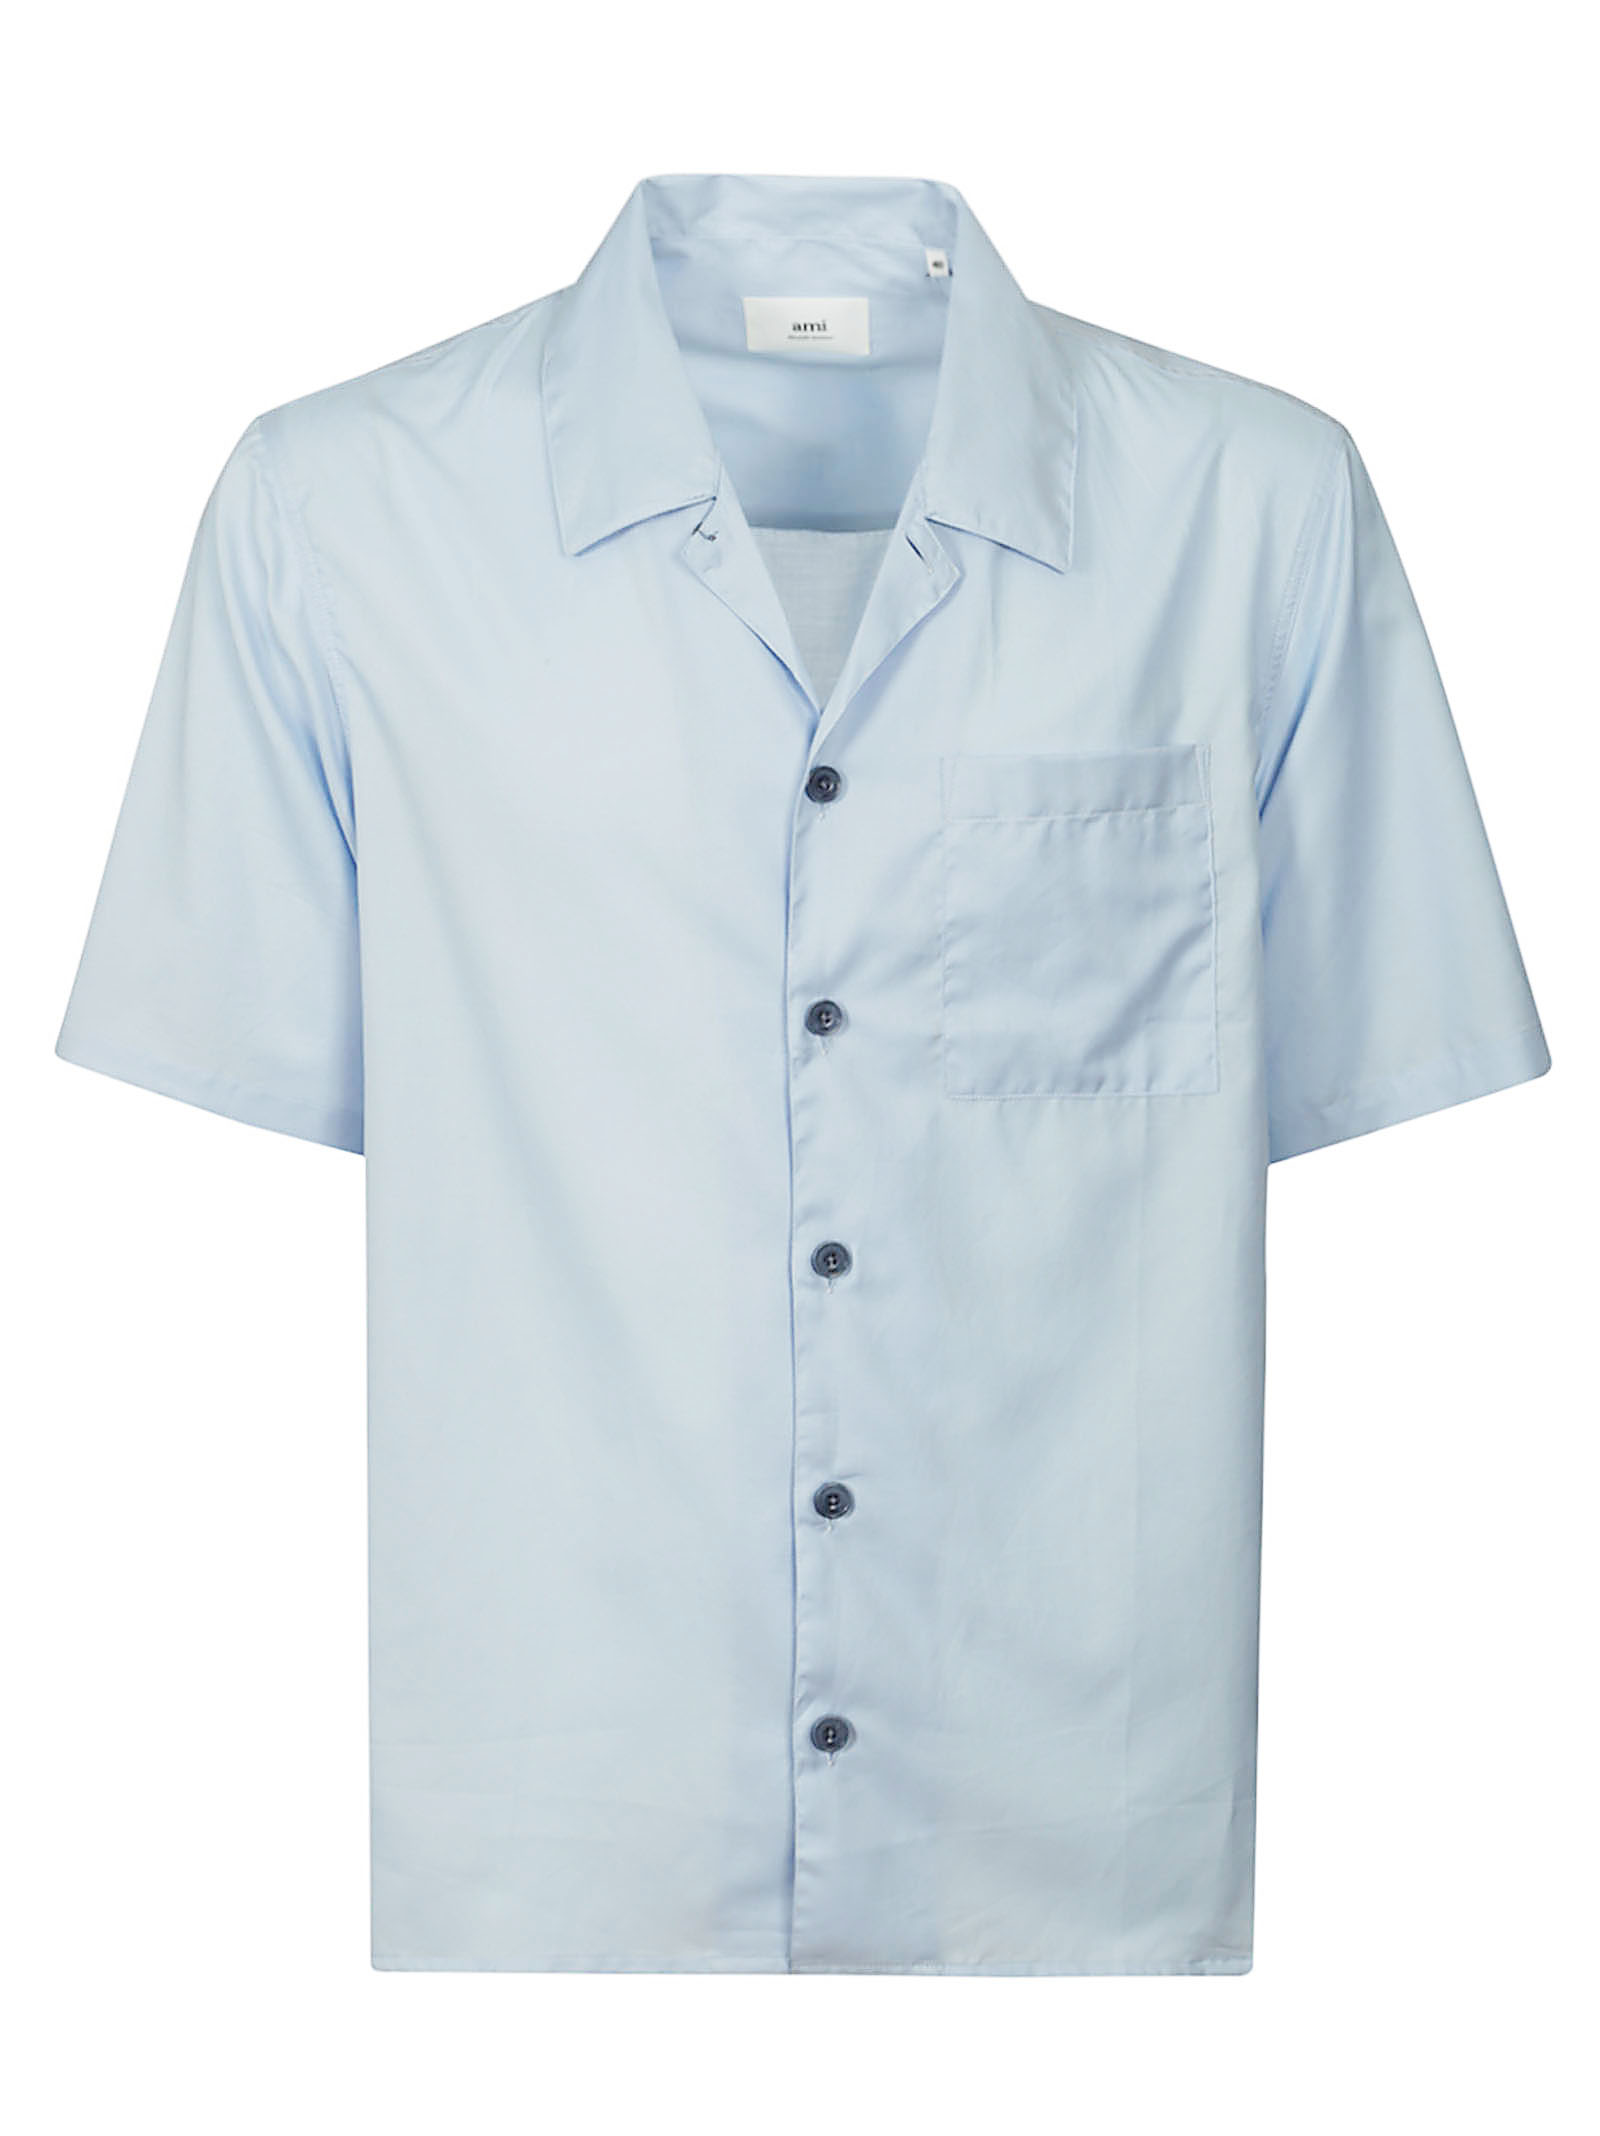 AMI Paris Blue & White Camp Collar Shirt